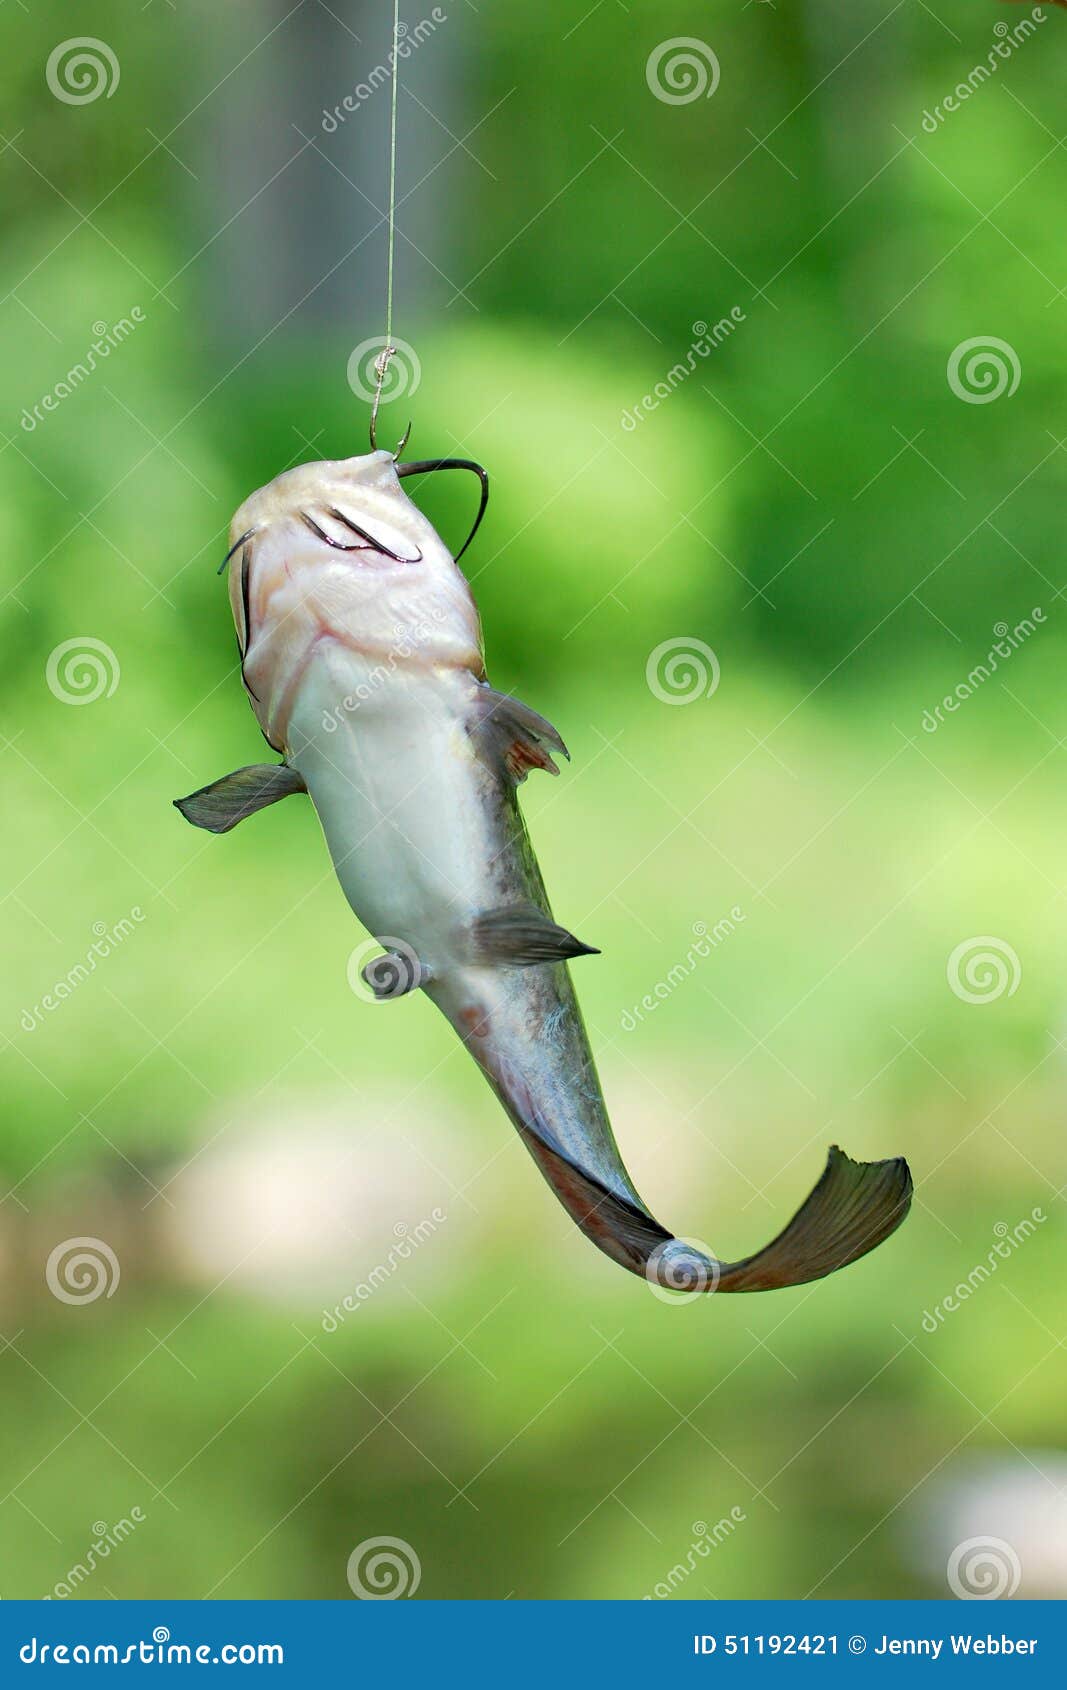 Catfish on the line stock image. Image of farm, fishing - 51192421